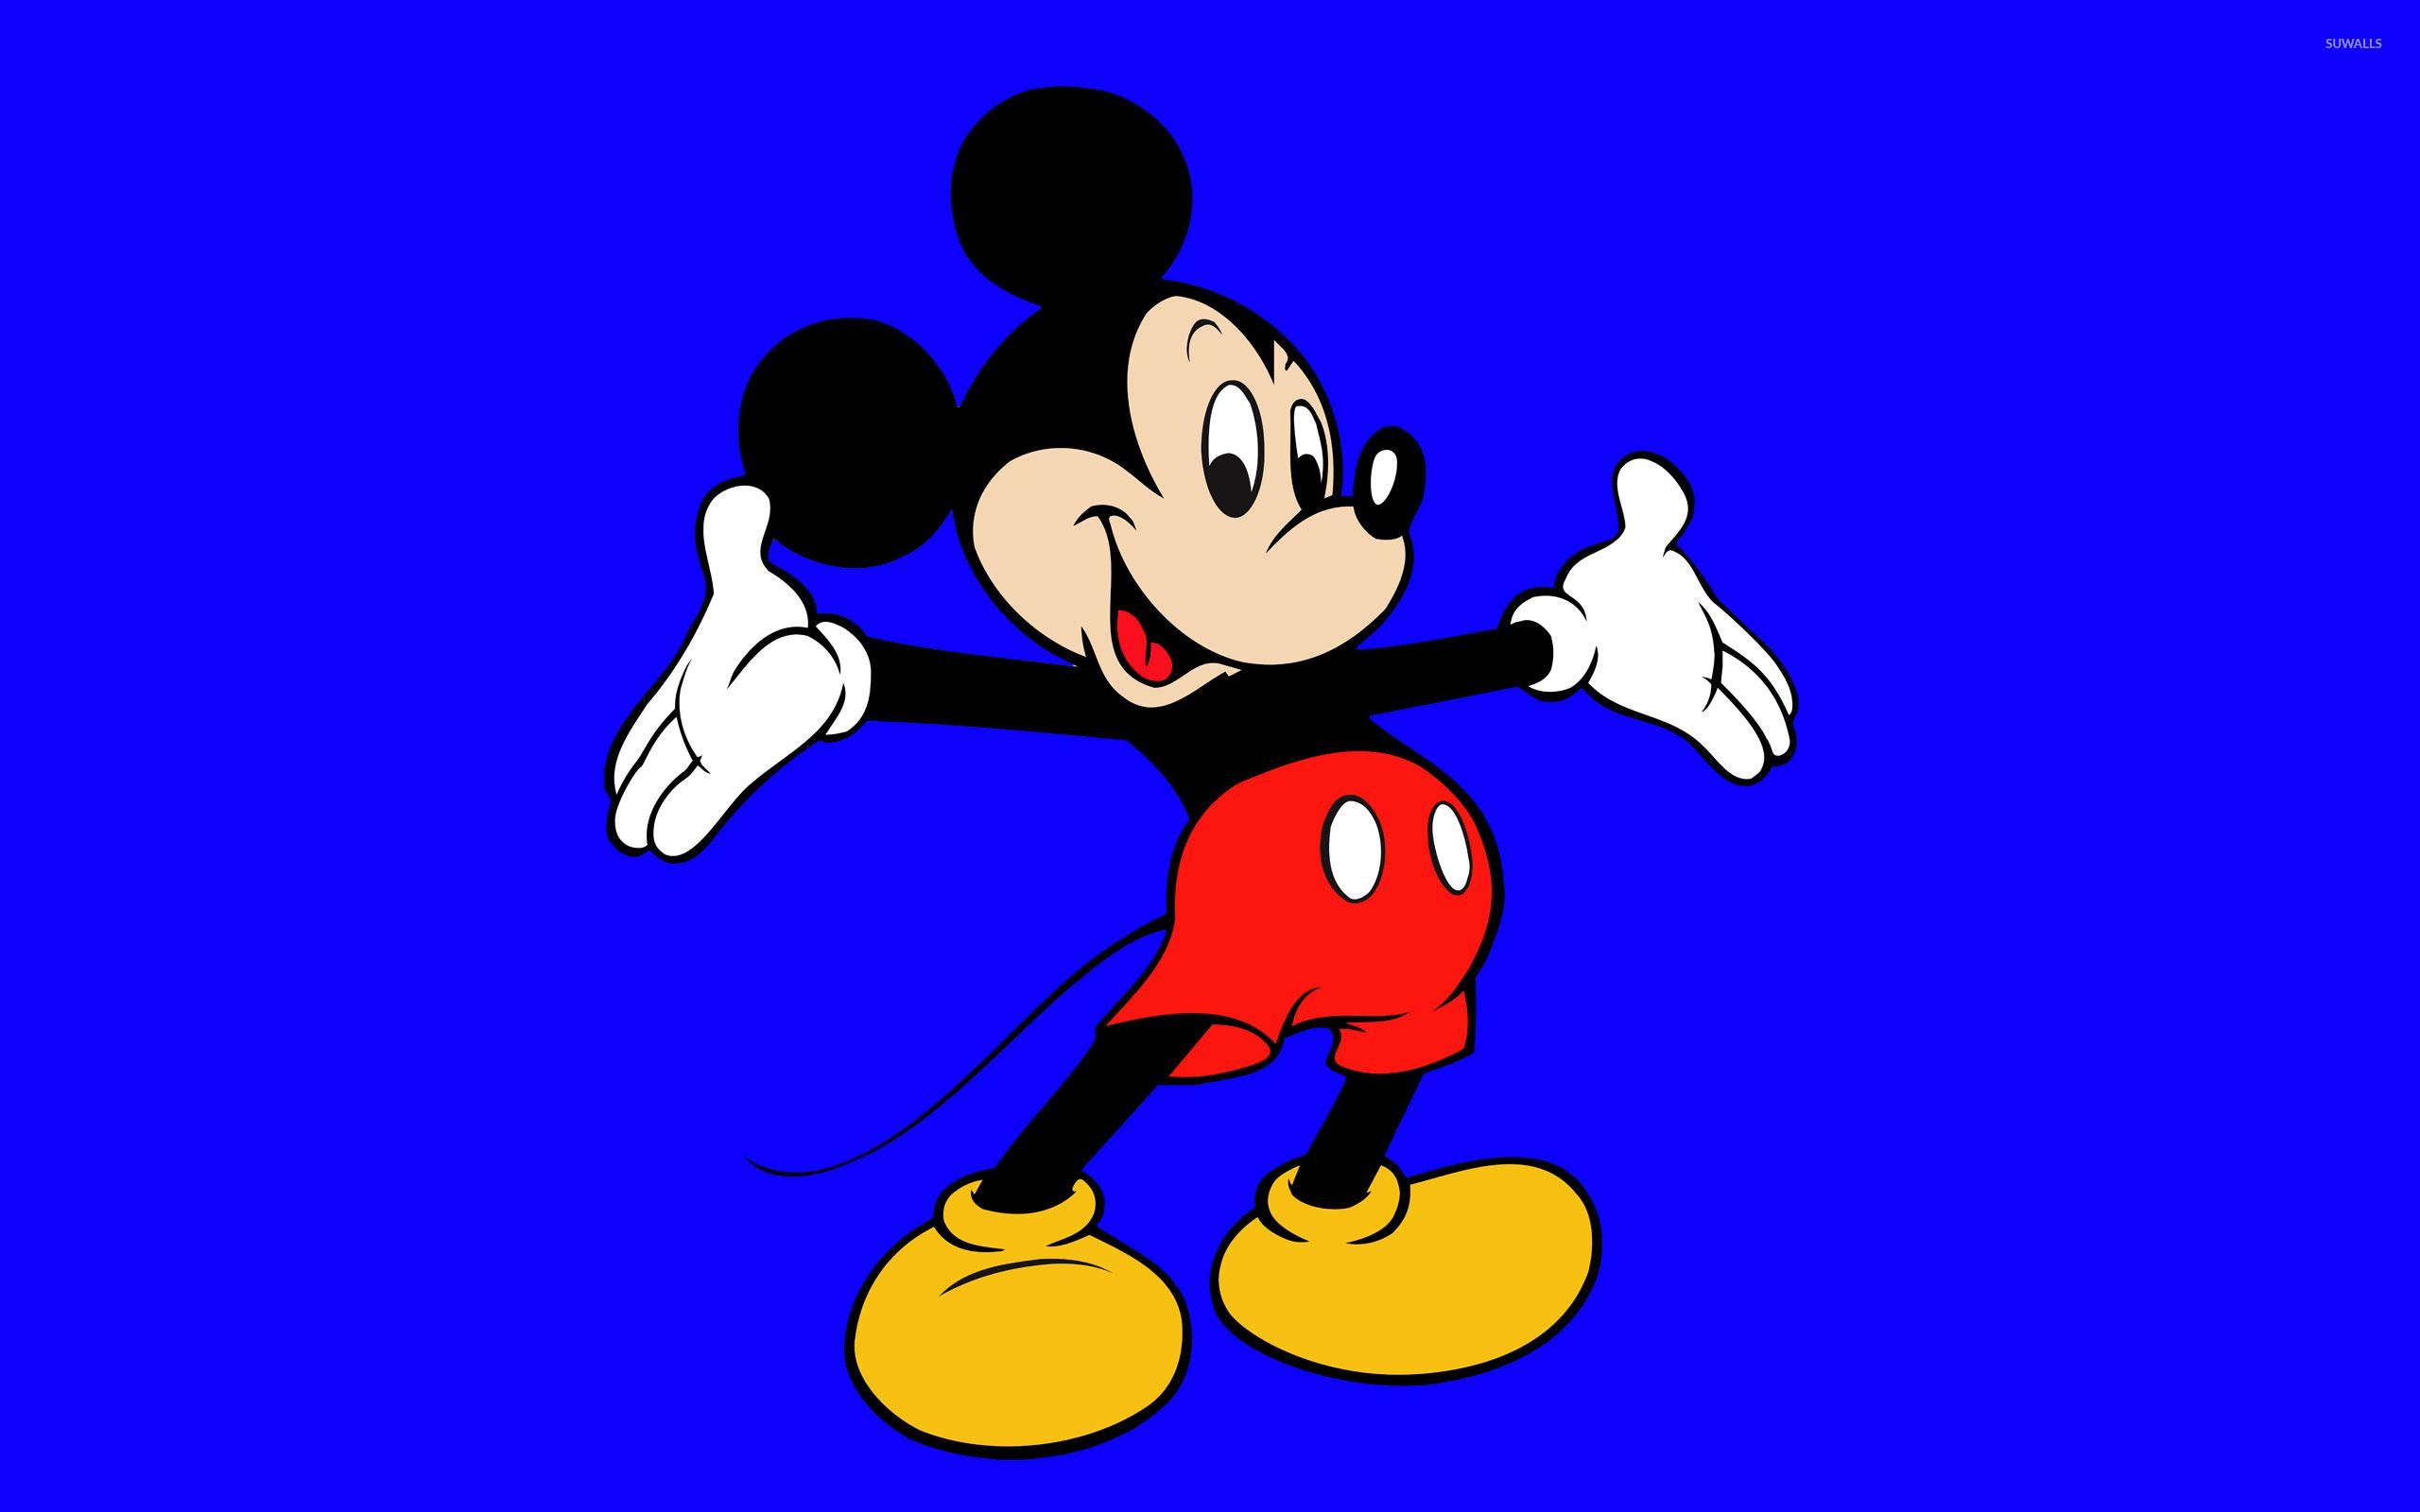 Mickey Mouse và màu xanh dương đã tạo nên một bộ sưu tập hình nền đẹp lung linh cho bạn thưởng thức. Những hình ảnh này sẽ giúp cho màn hình của bạn trở nên nổi bật và cuốn hút. Hãy cùng tải xuống và sử dụng ngay hình nền Mickey Mouse xanh dương để tận hưởng cuộc sống nhé.